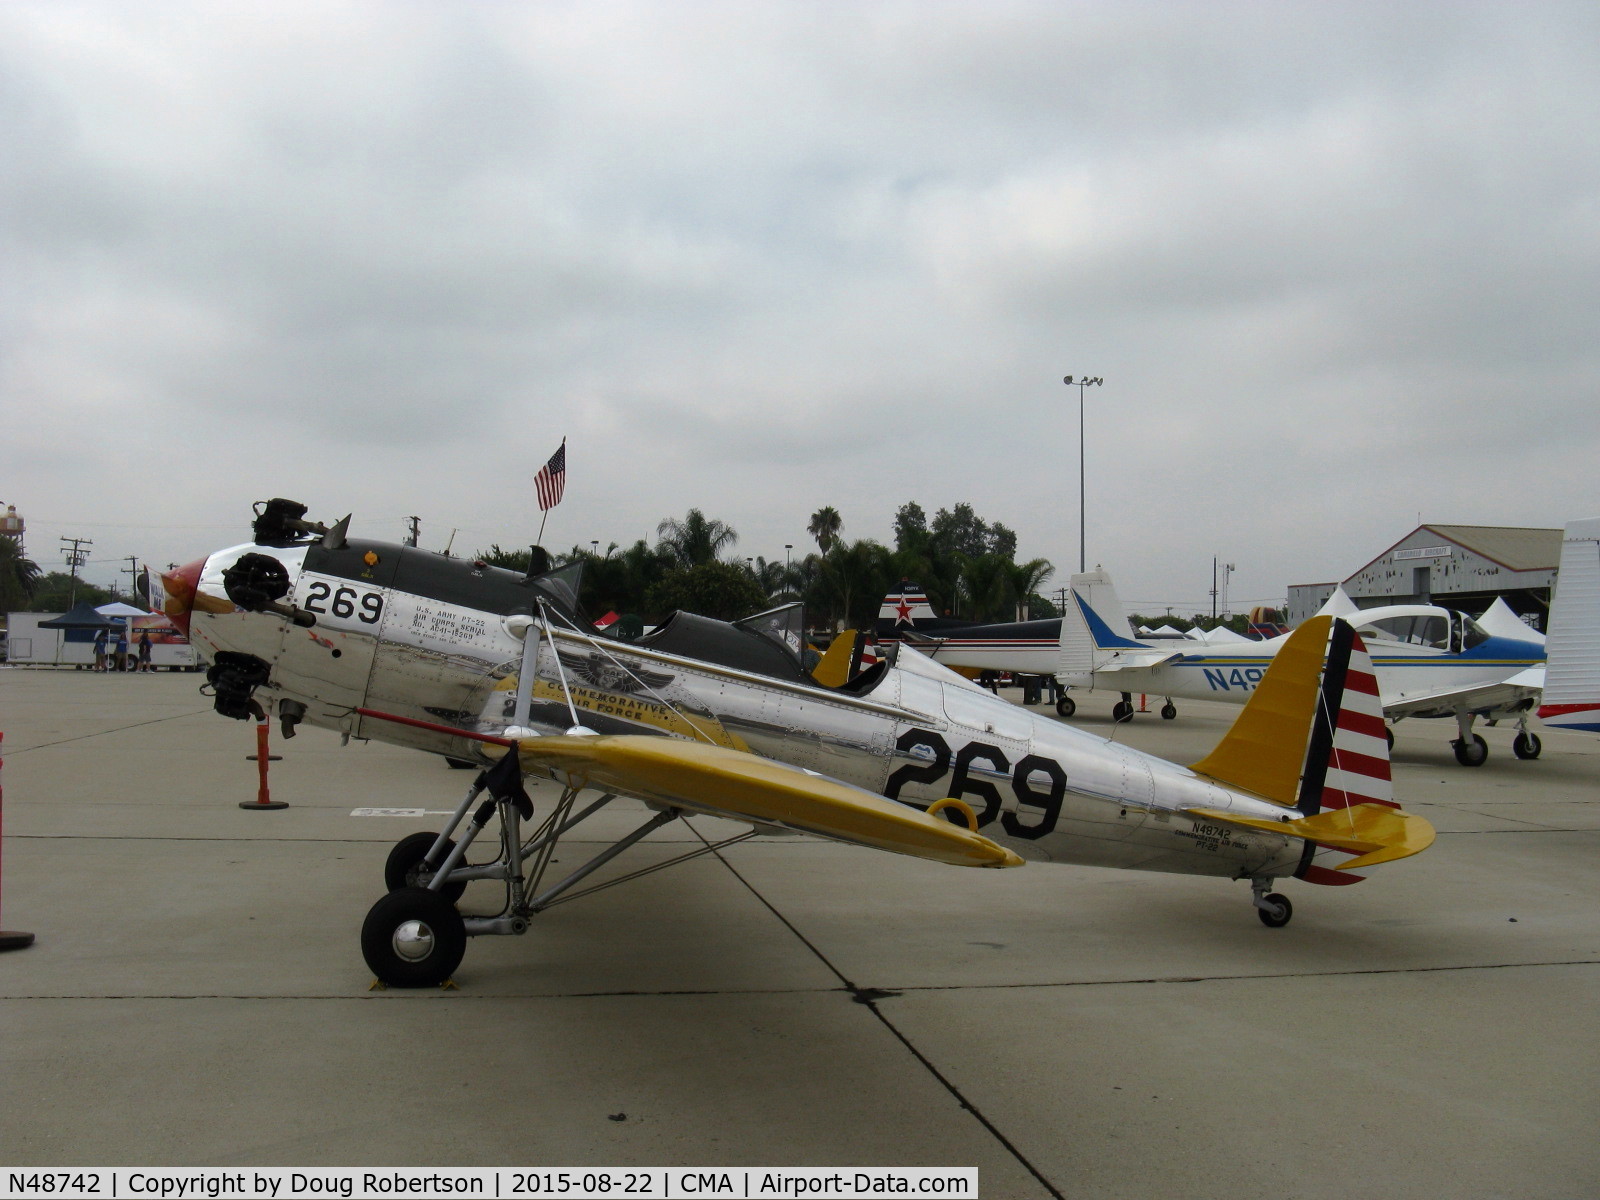 N48742, 1941 Ryan Aeronautical ST3KR C/N 1298, 1941 Ryan Aeronautical ST-3KR as PT-22, Kinner R-5 160 Hp radial